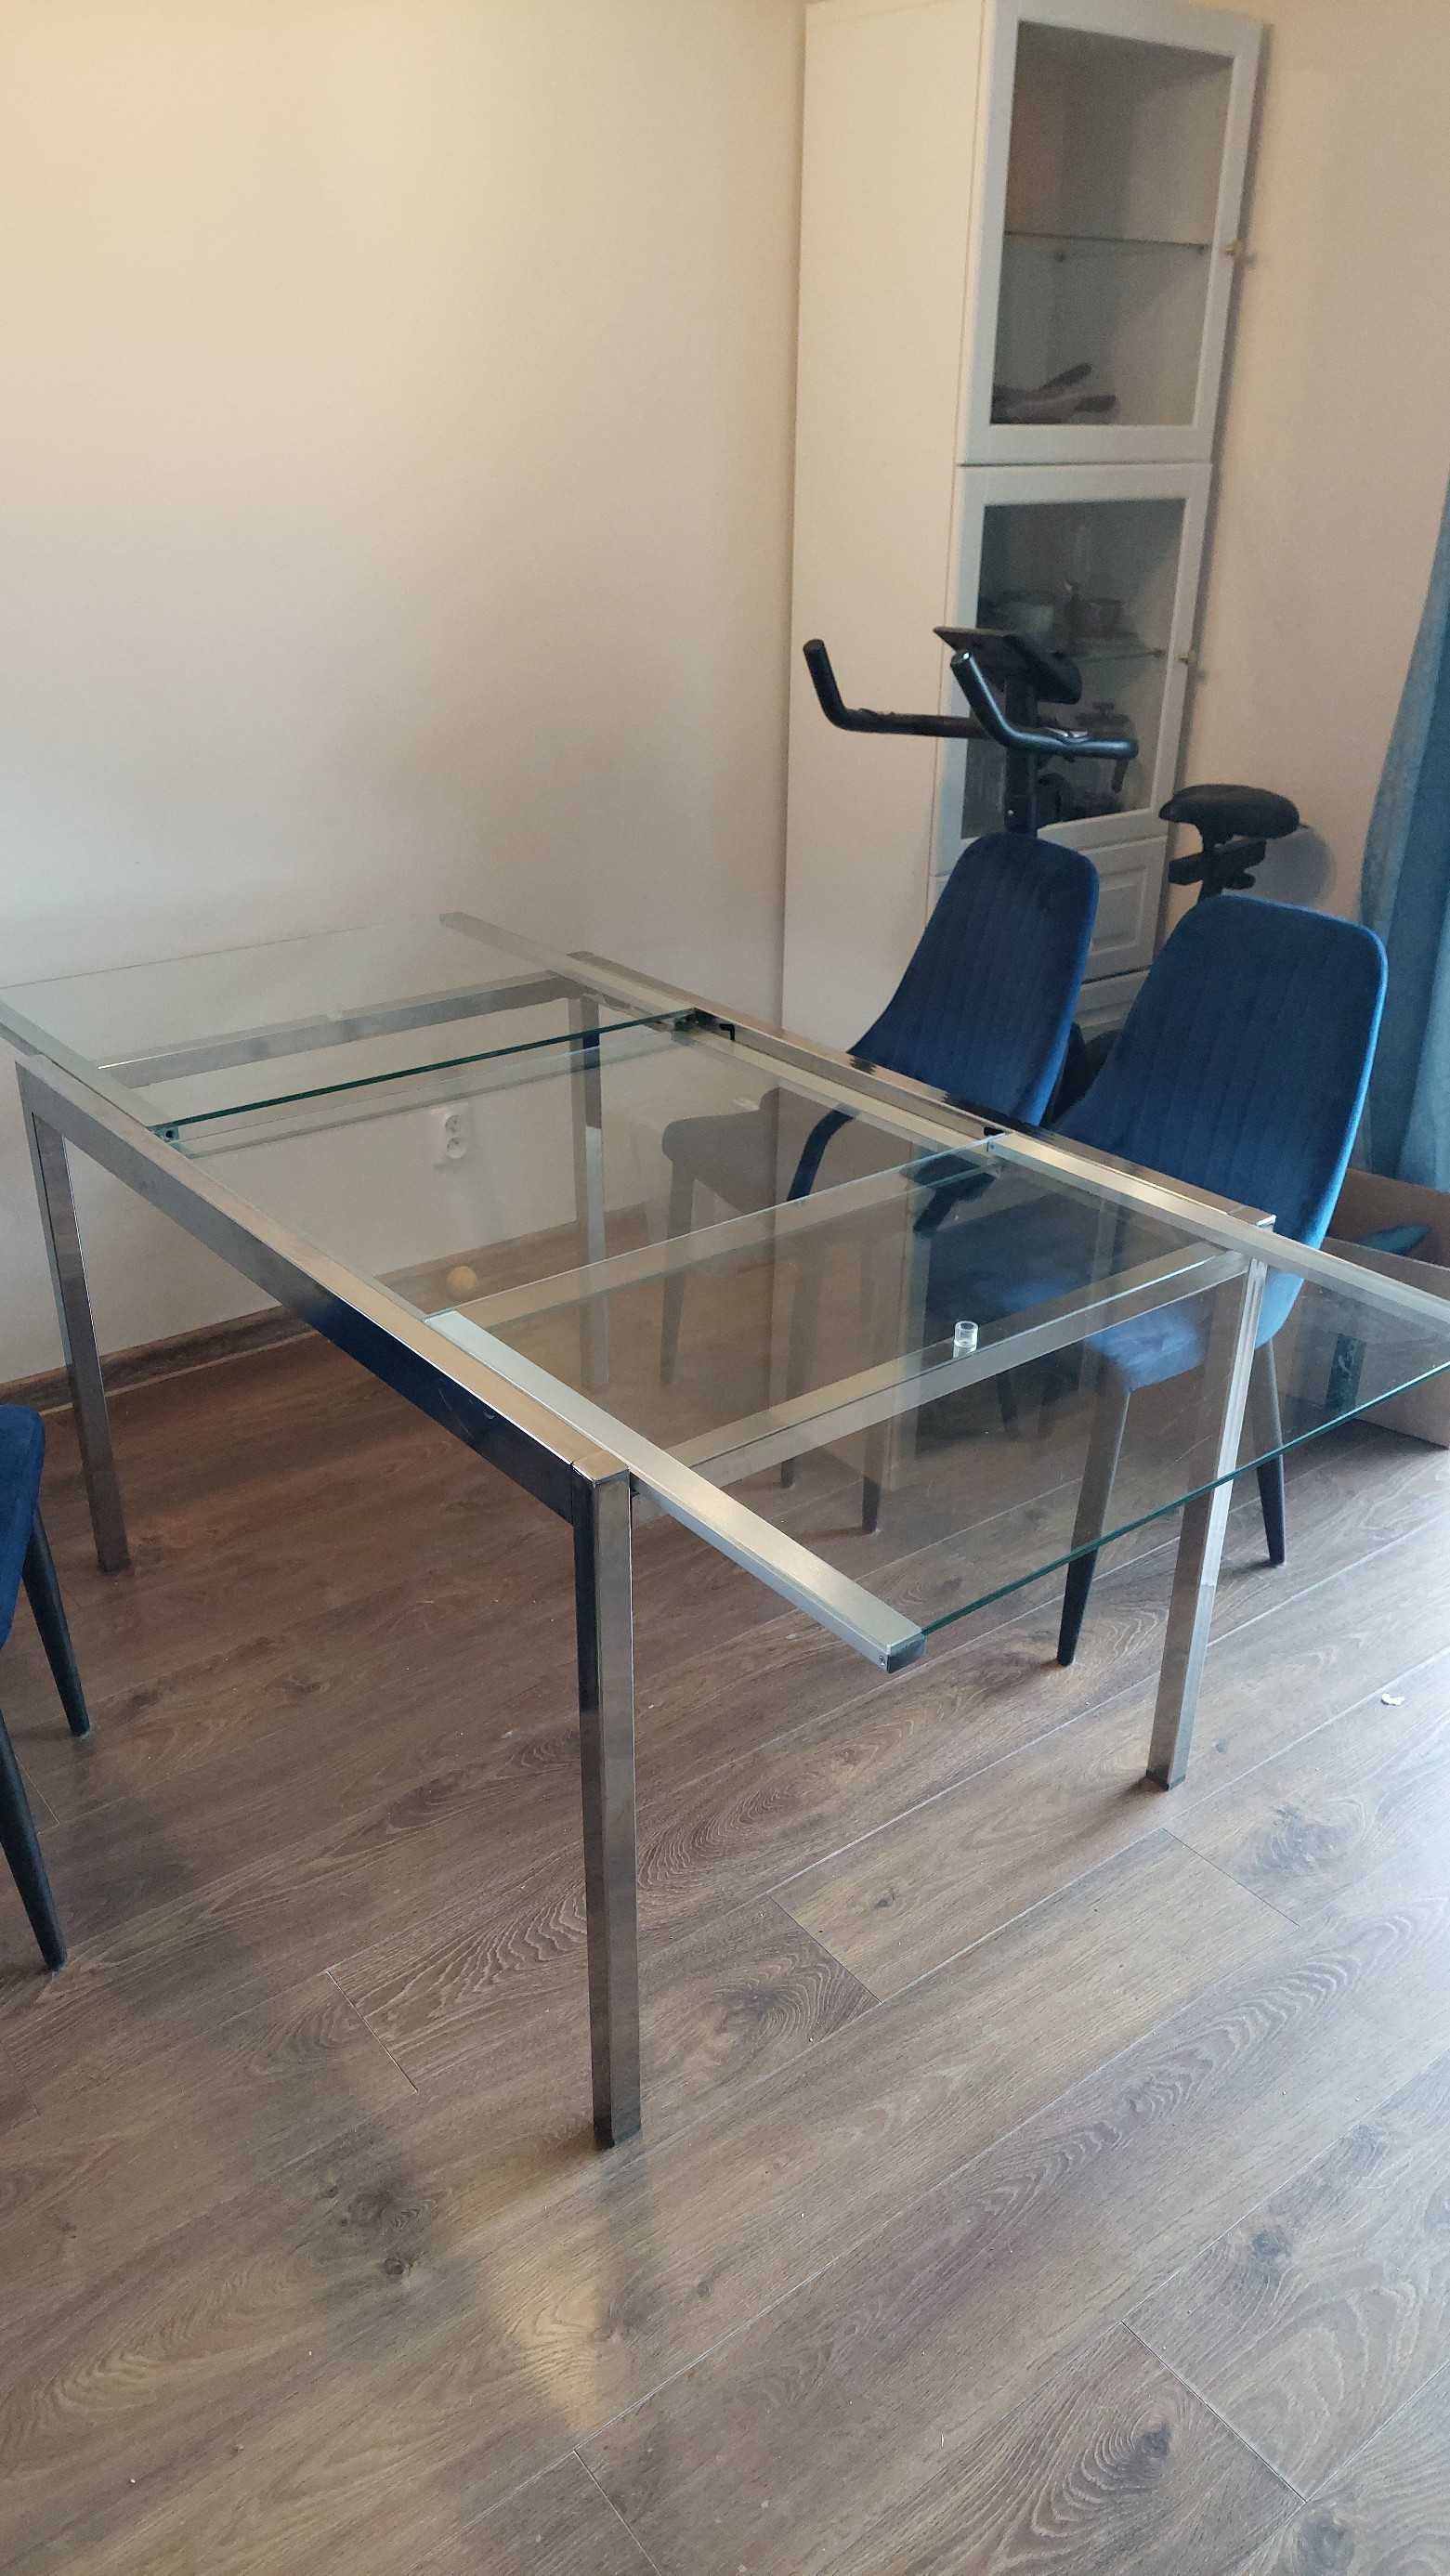 Stół rozkładany IKEA szklany blat